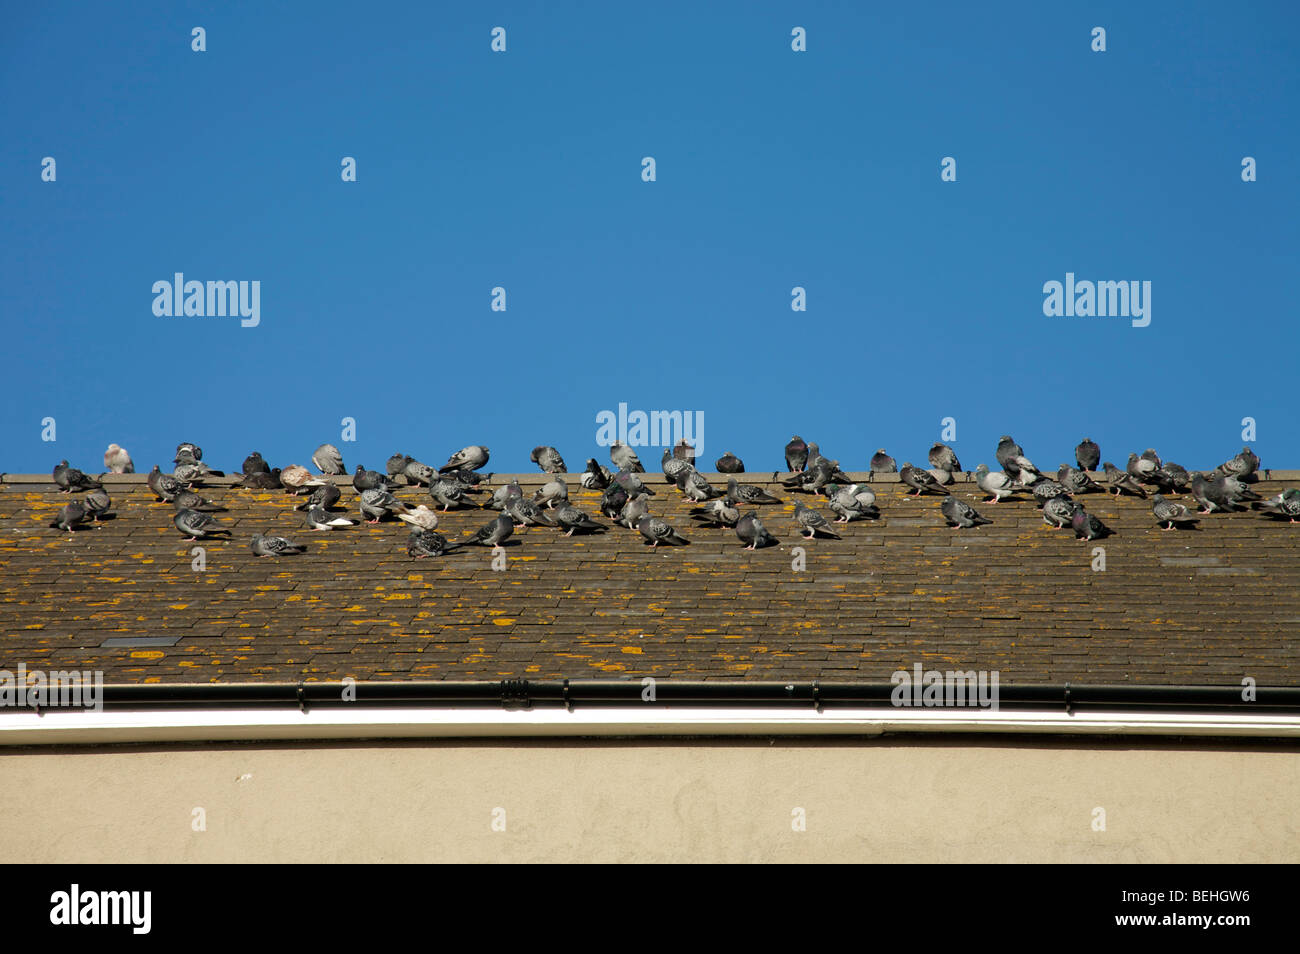 Una bandada de palomas grises en una azotea de azulejos contra un cielo azul brillante Foto de stock